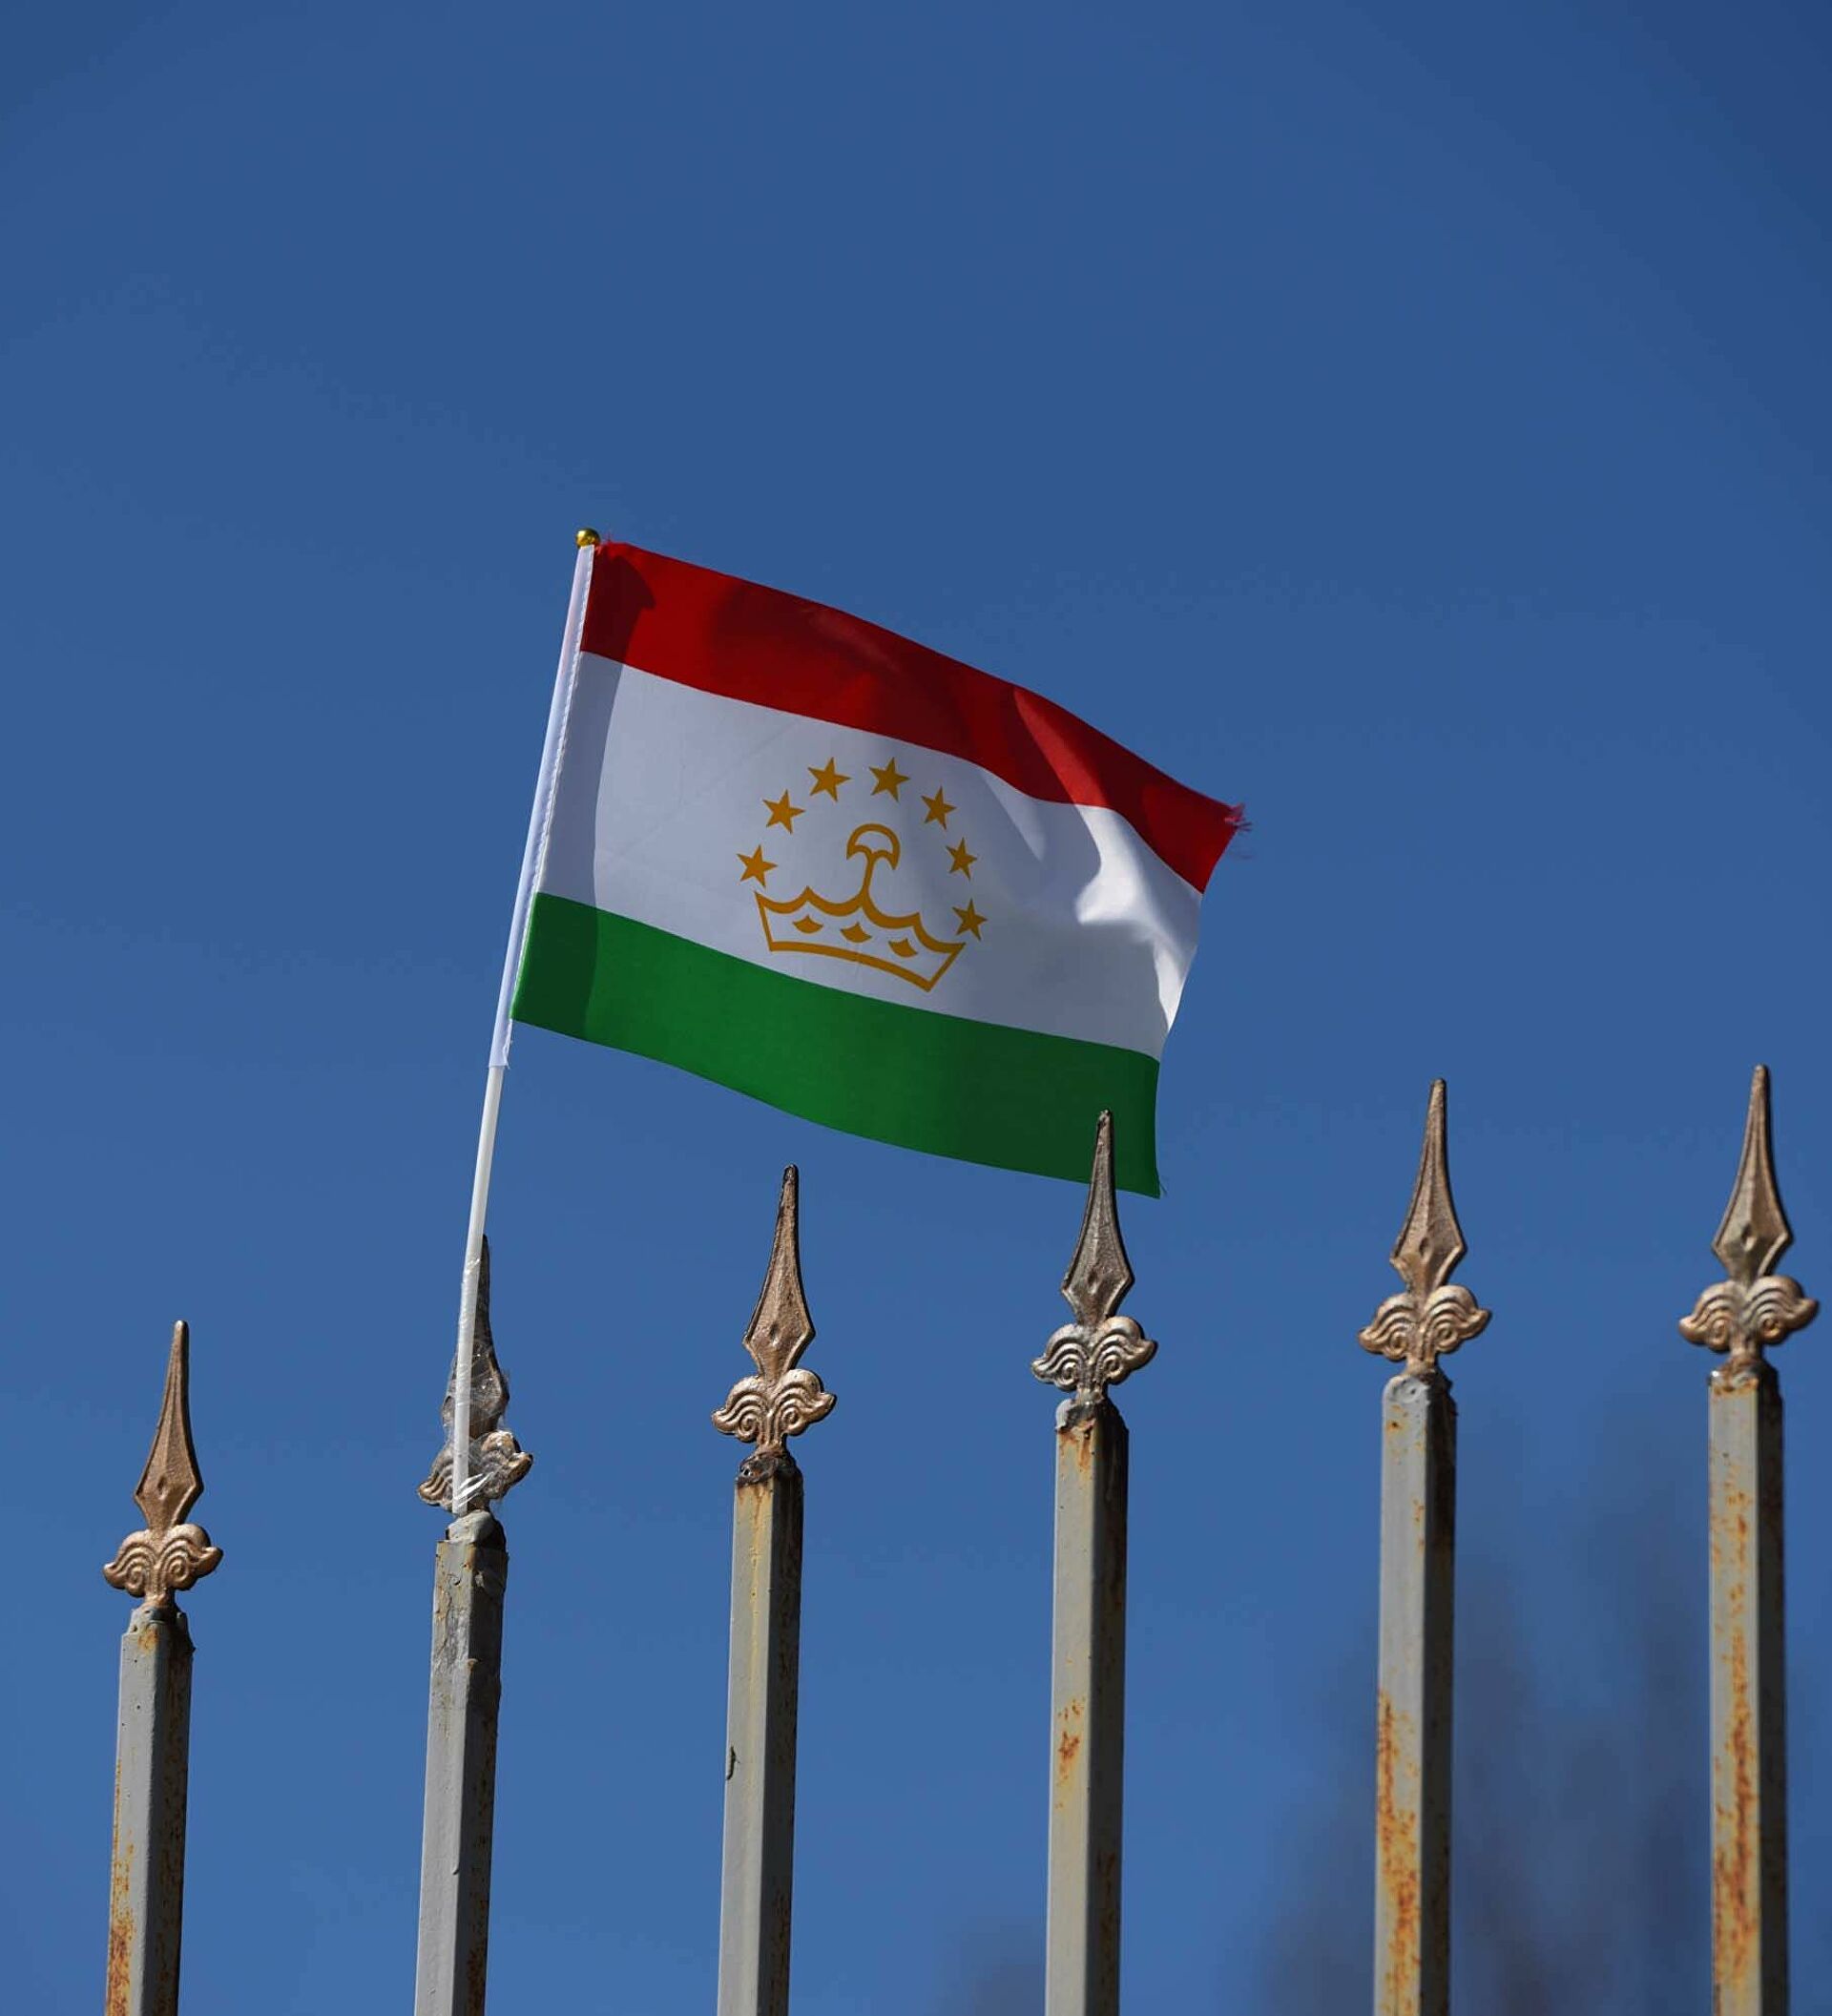 Известно, что протесты в одном из регионов Таджикистана прекратились